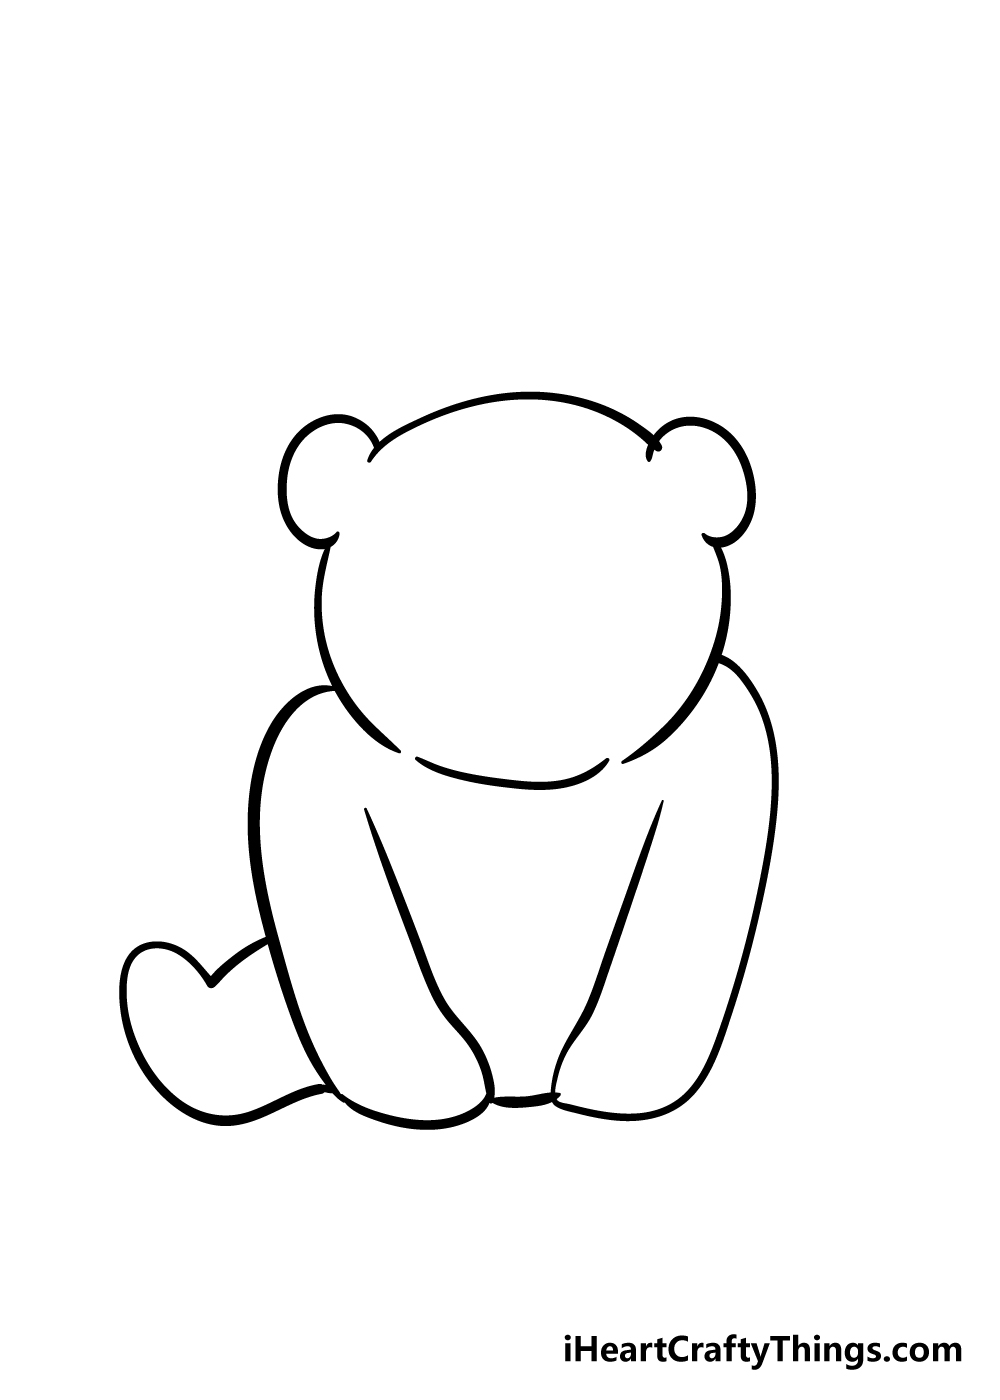 Panda3 - Hướng dẫn chi tiết cách vẽ con gấu trúc cute dễ thương với 7 bước đơn giản